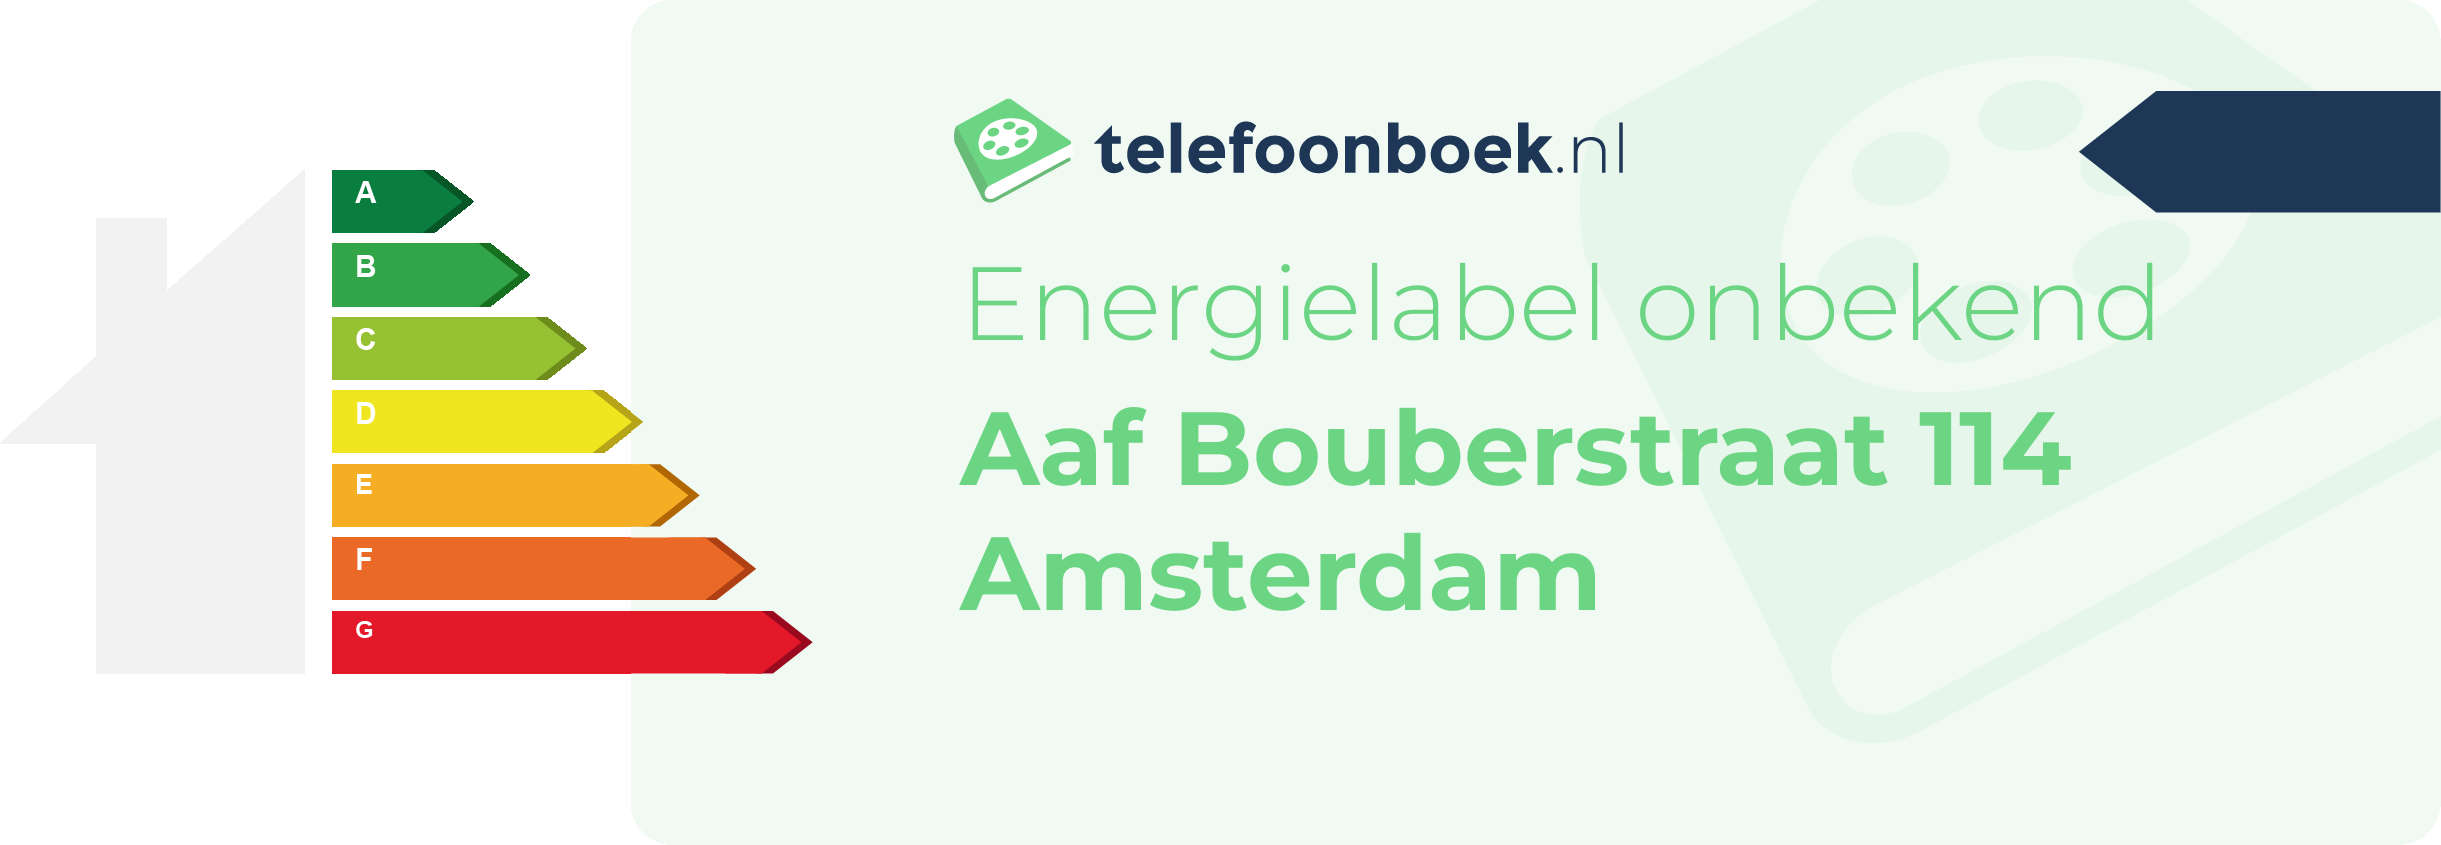 Energielabel Aaf Bouberstraat 114 Amsterdam